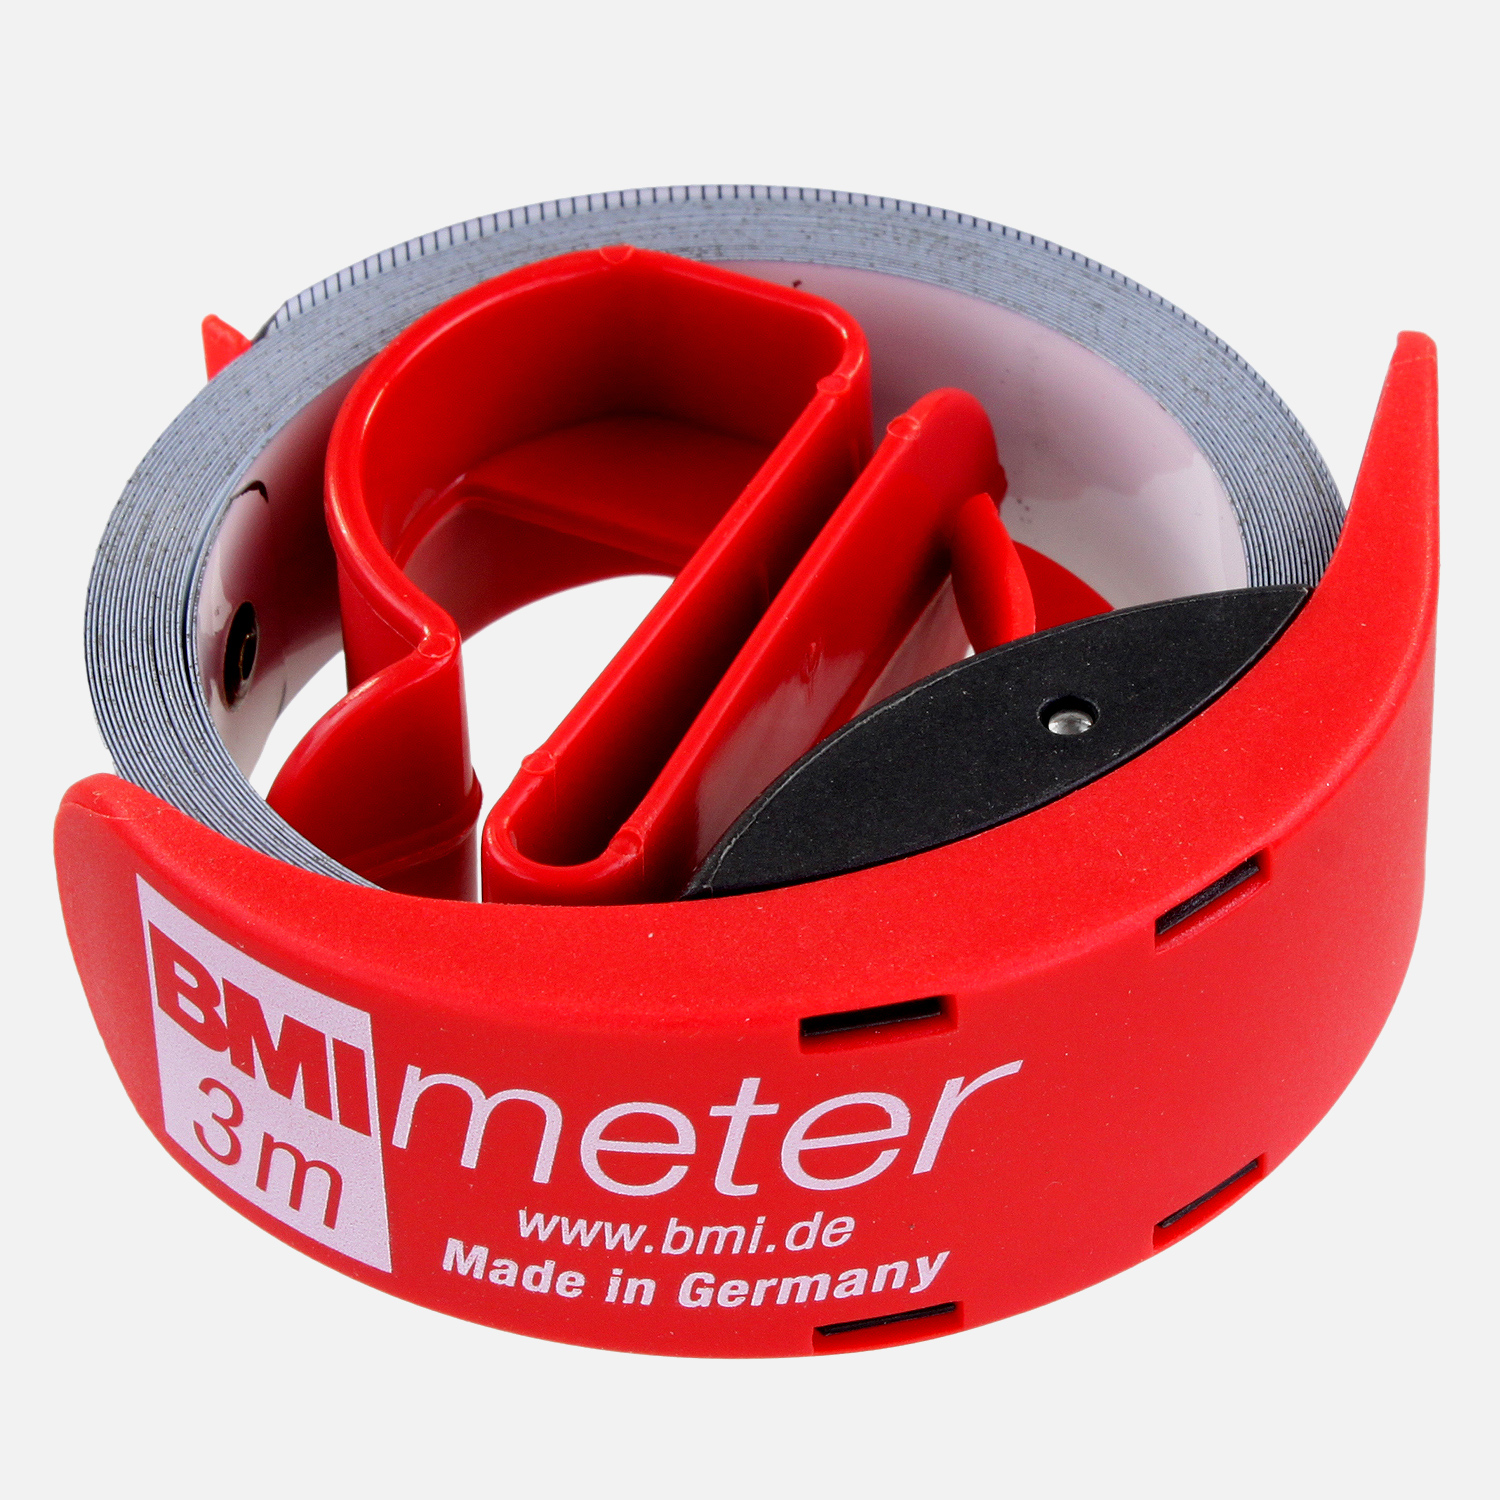 1 Taschenbandmaß - 3m - BMI Meter - mit Zollteilung